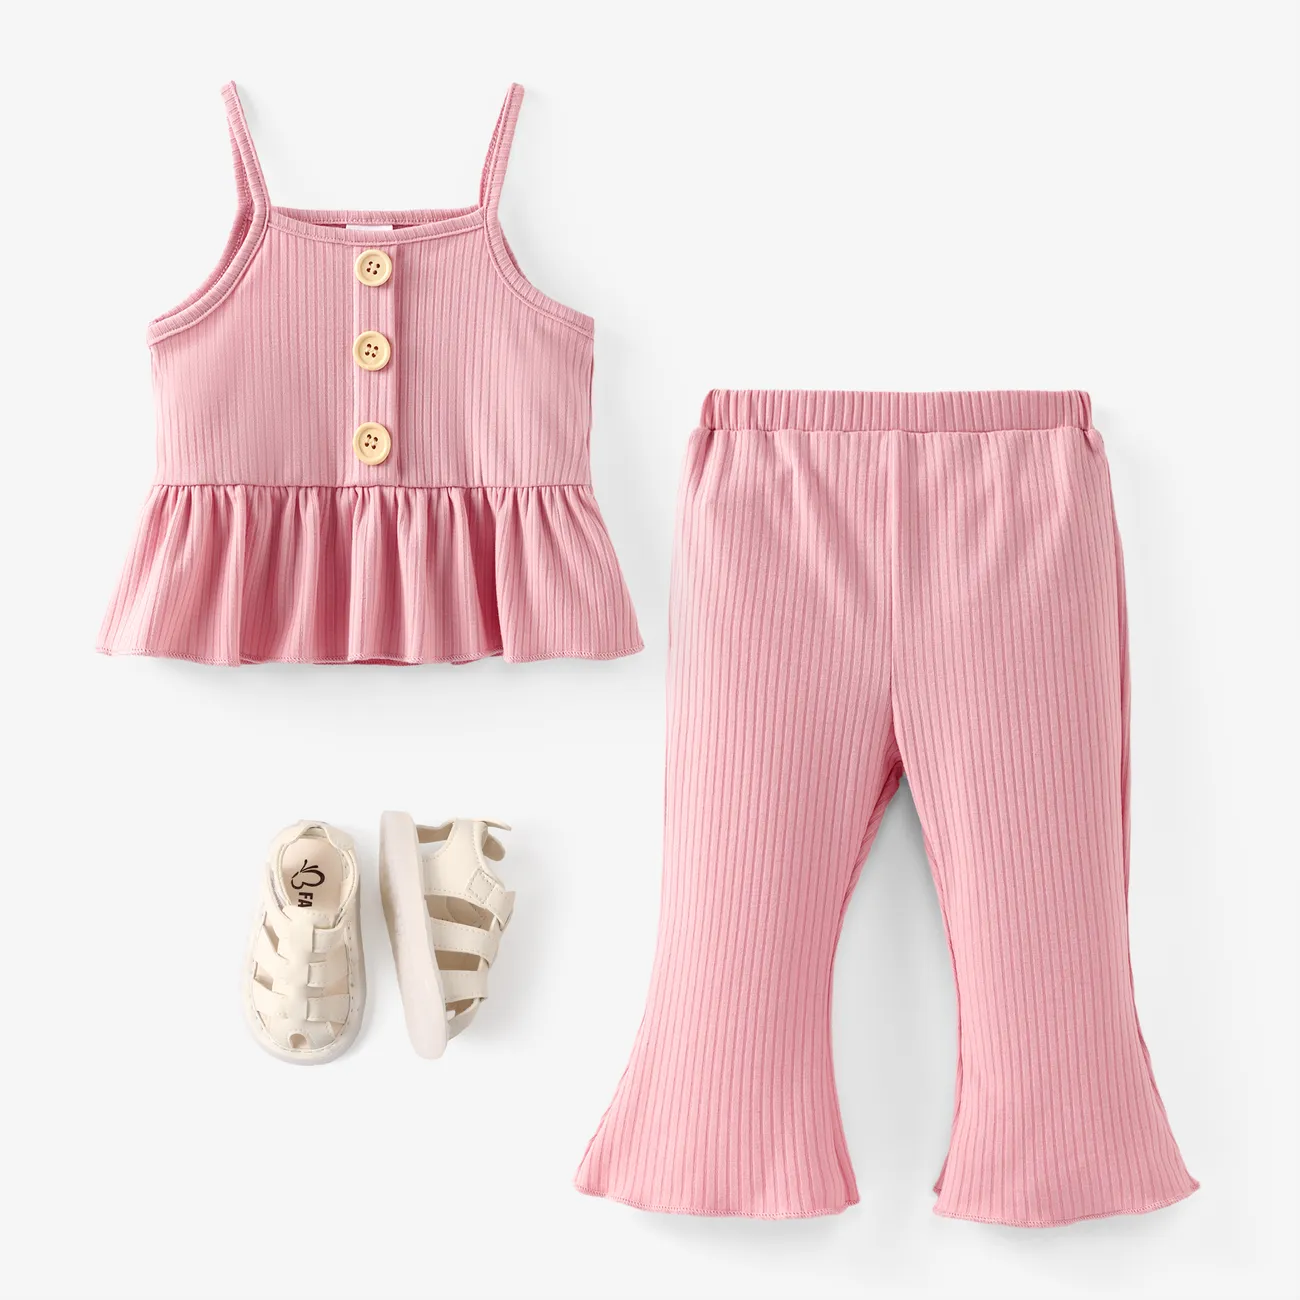 قطعتان من الملابس الداخلية للفتيات الصغيرات بحمالات سباغيتي صلبة ومجموعة سروال واسع زهري big image 1